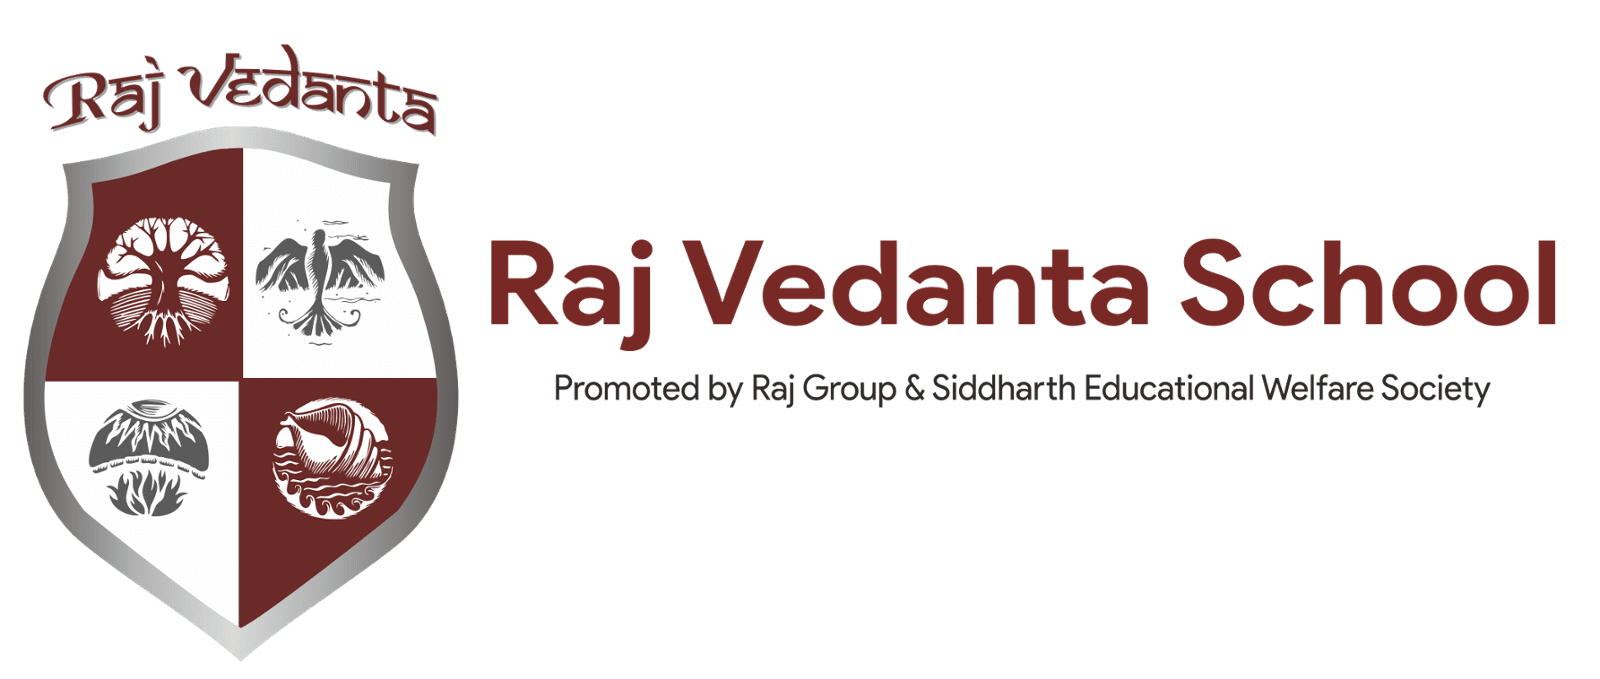 Raj Vedanta School